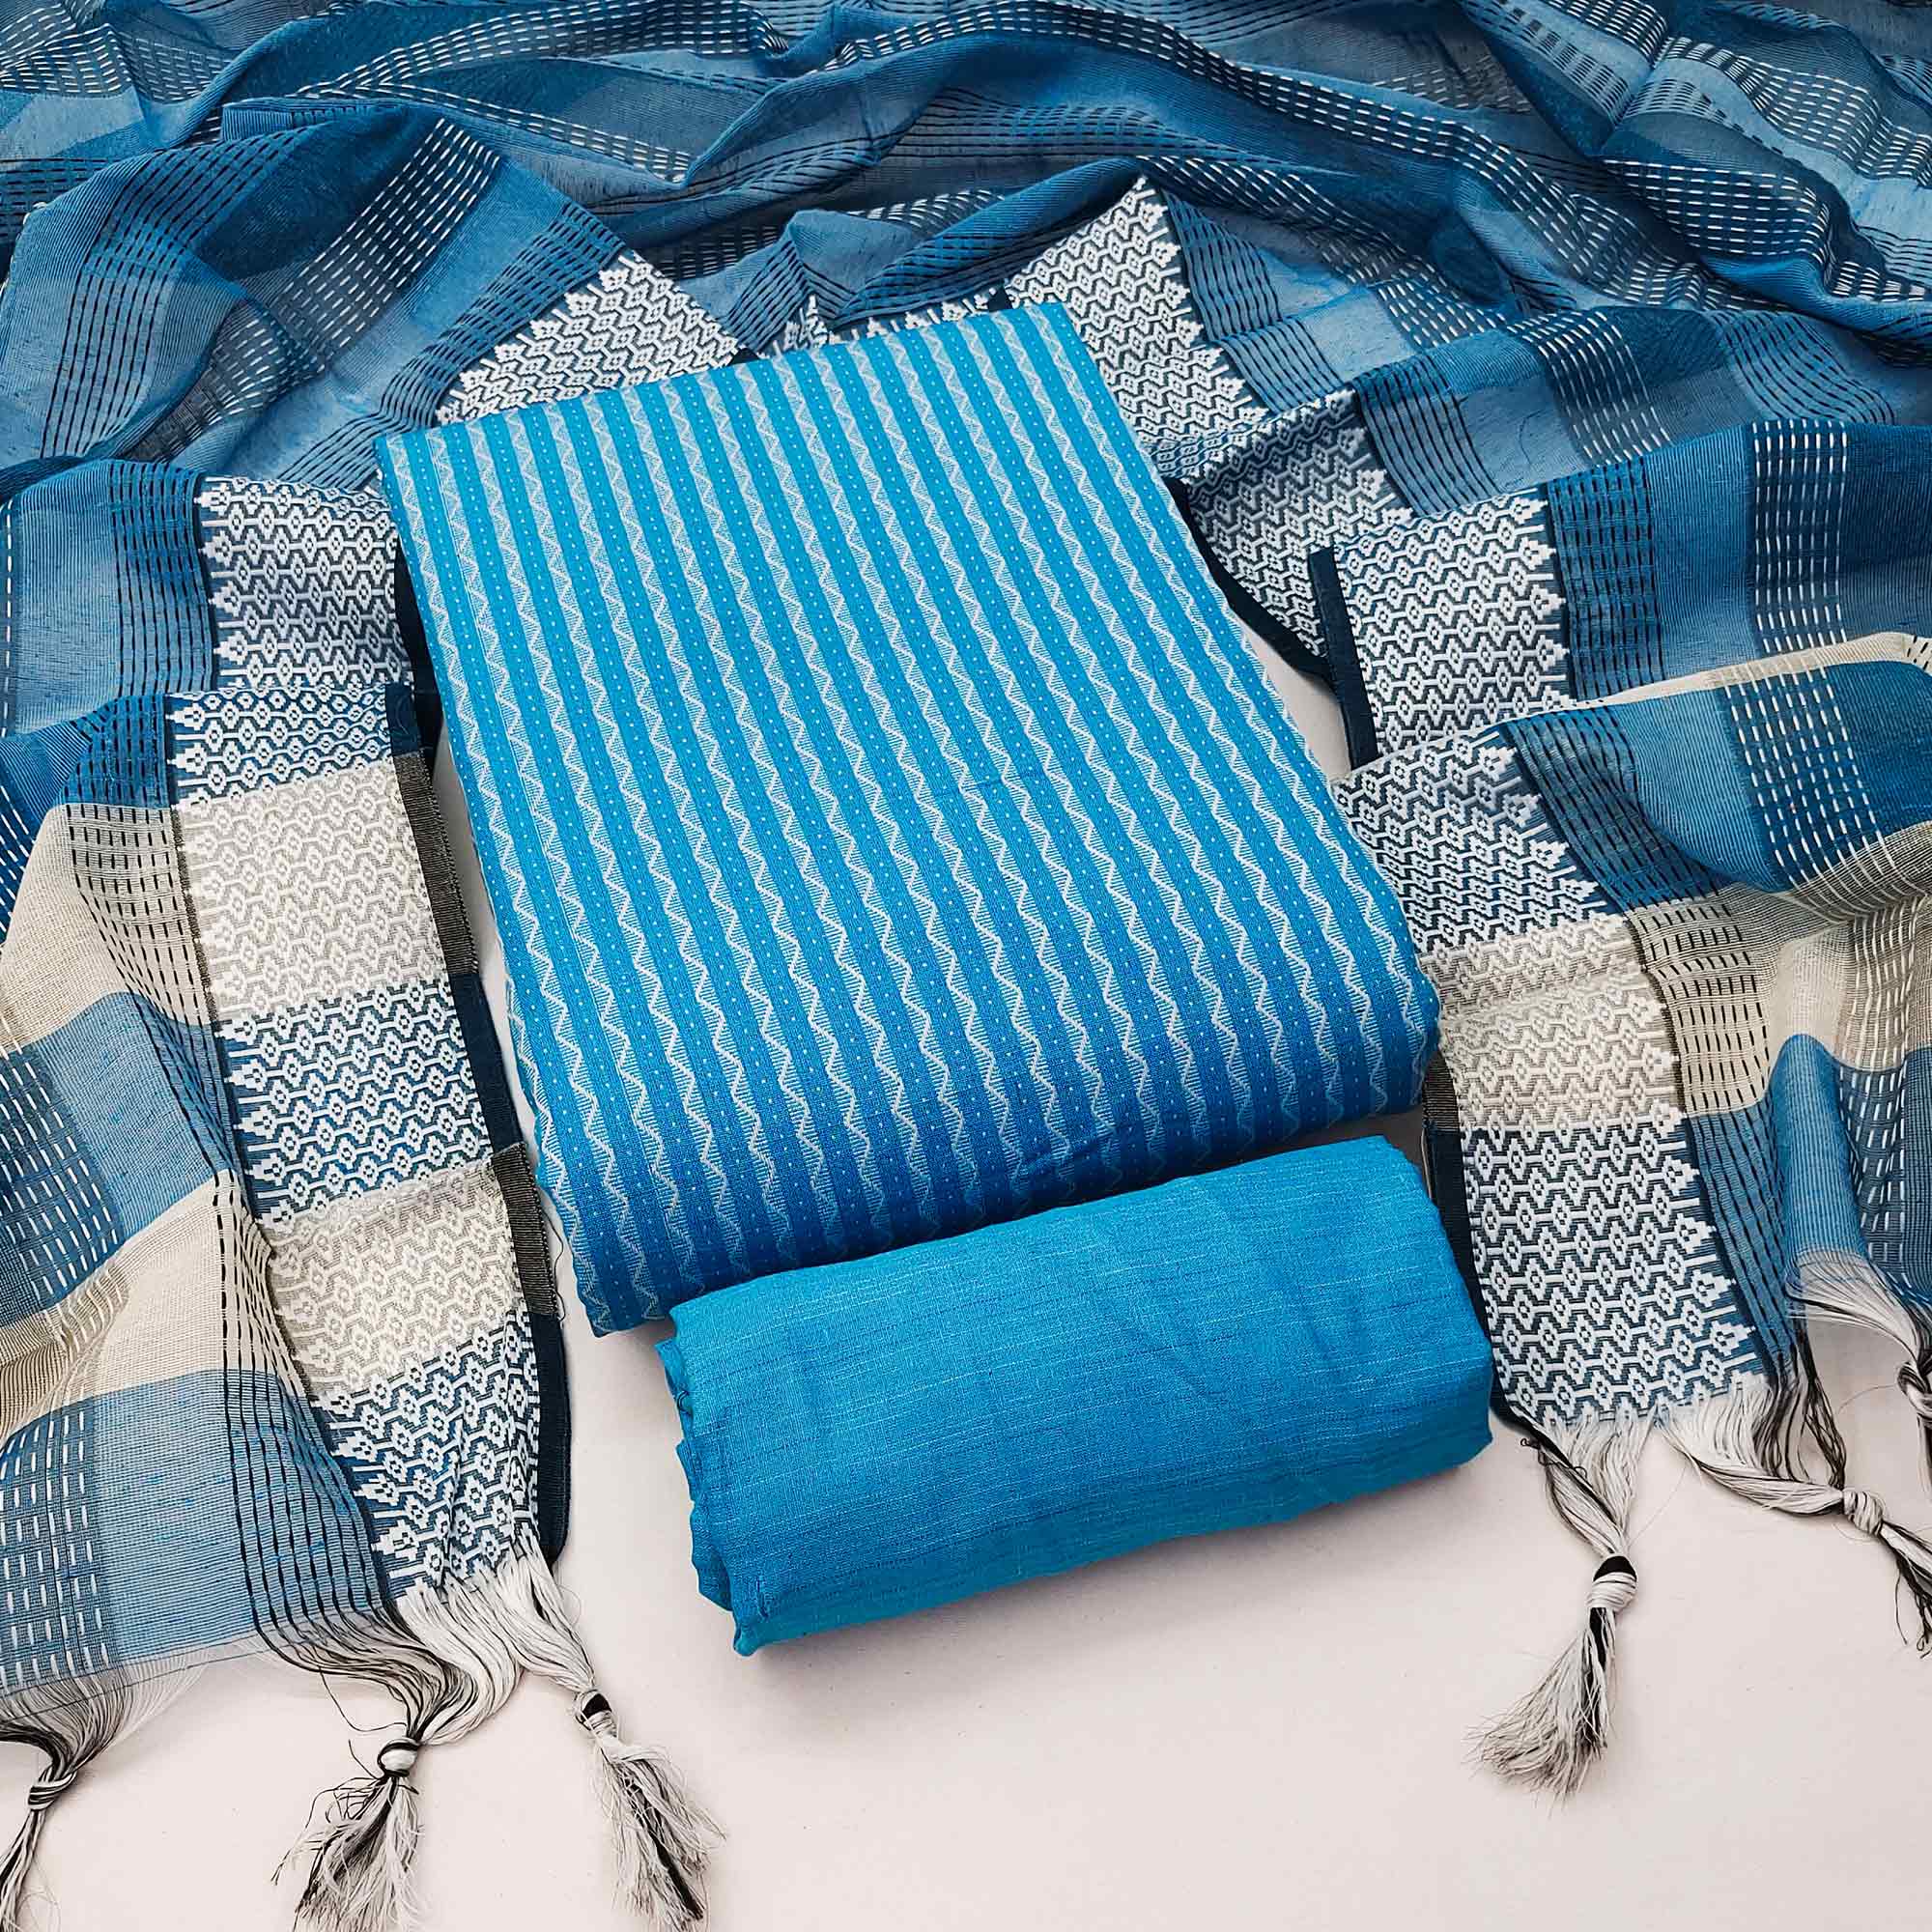 Firozi Blue Woven Cotton Blend Dress Material